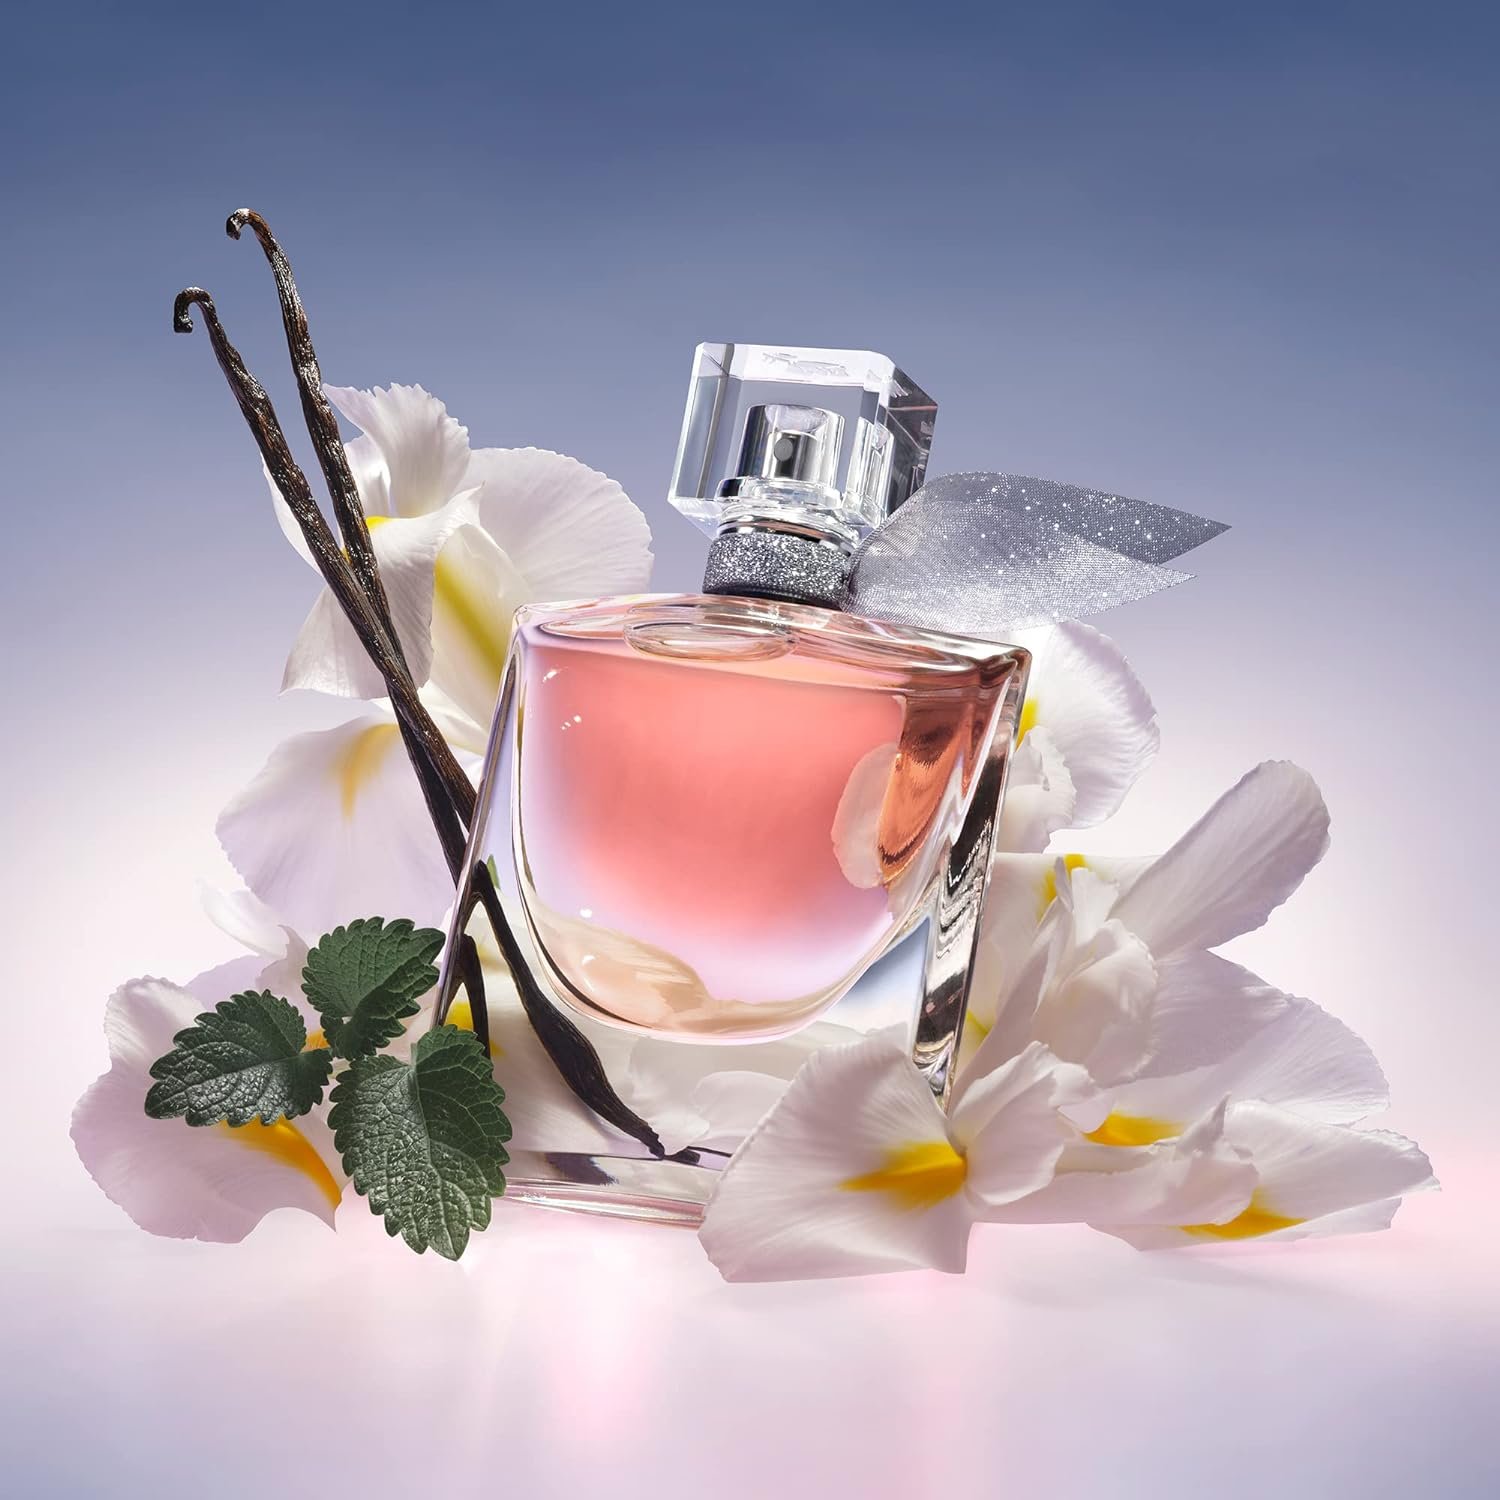 Lancôme La Vie Est Belle Eau de Parfum - Long Lasting Fragrance with Notes of Iris, Earthy Patchouli, Warm Vanilla  Spun Sugar - Floral  Sweet Womens Perfume